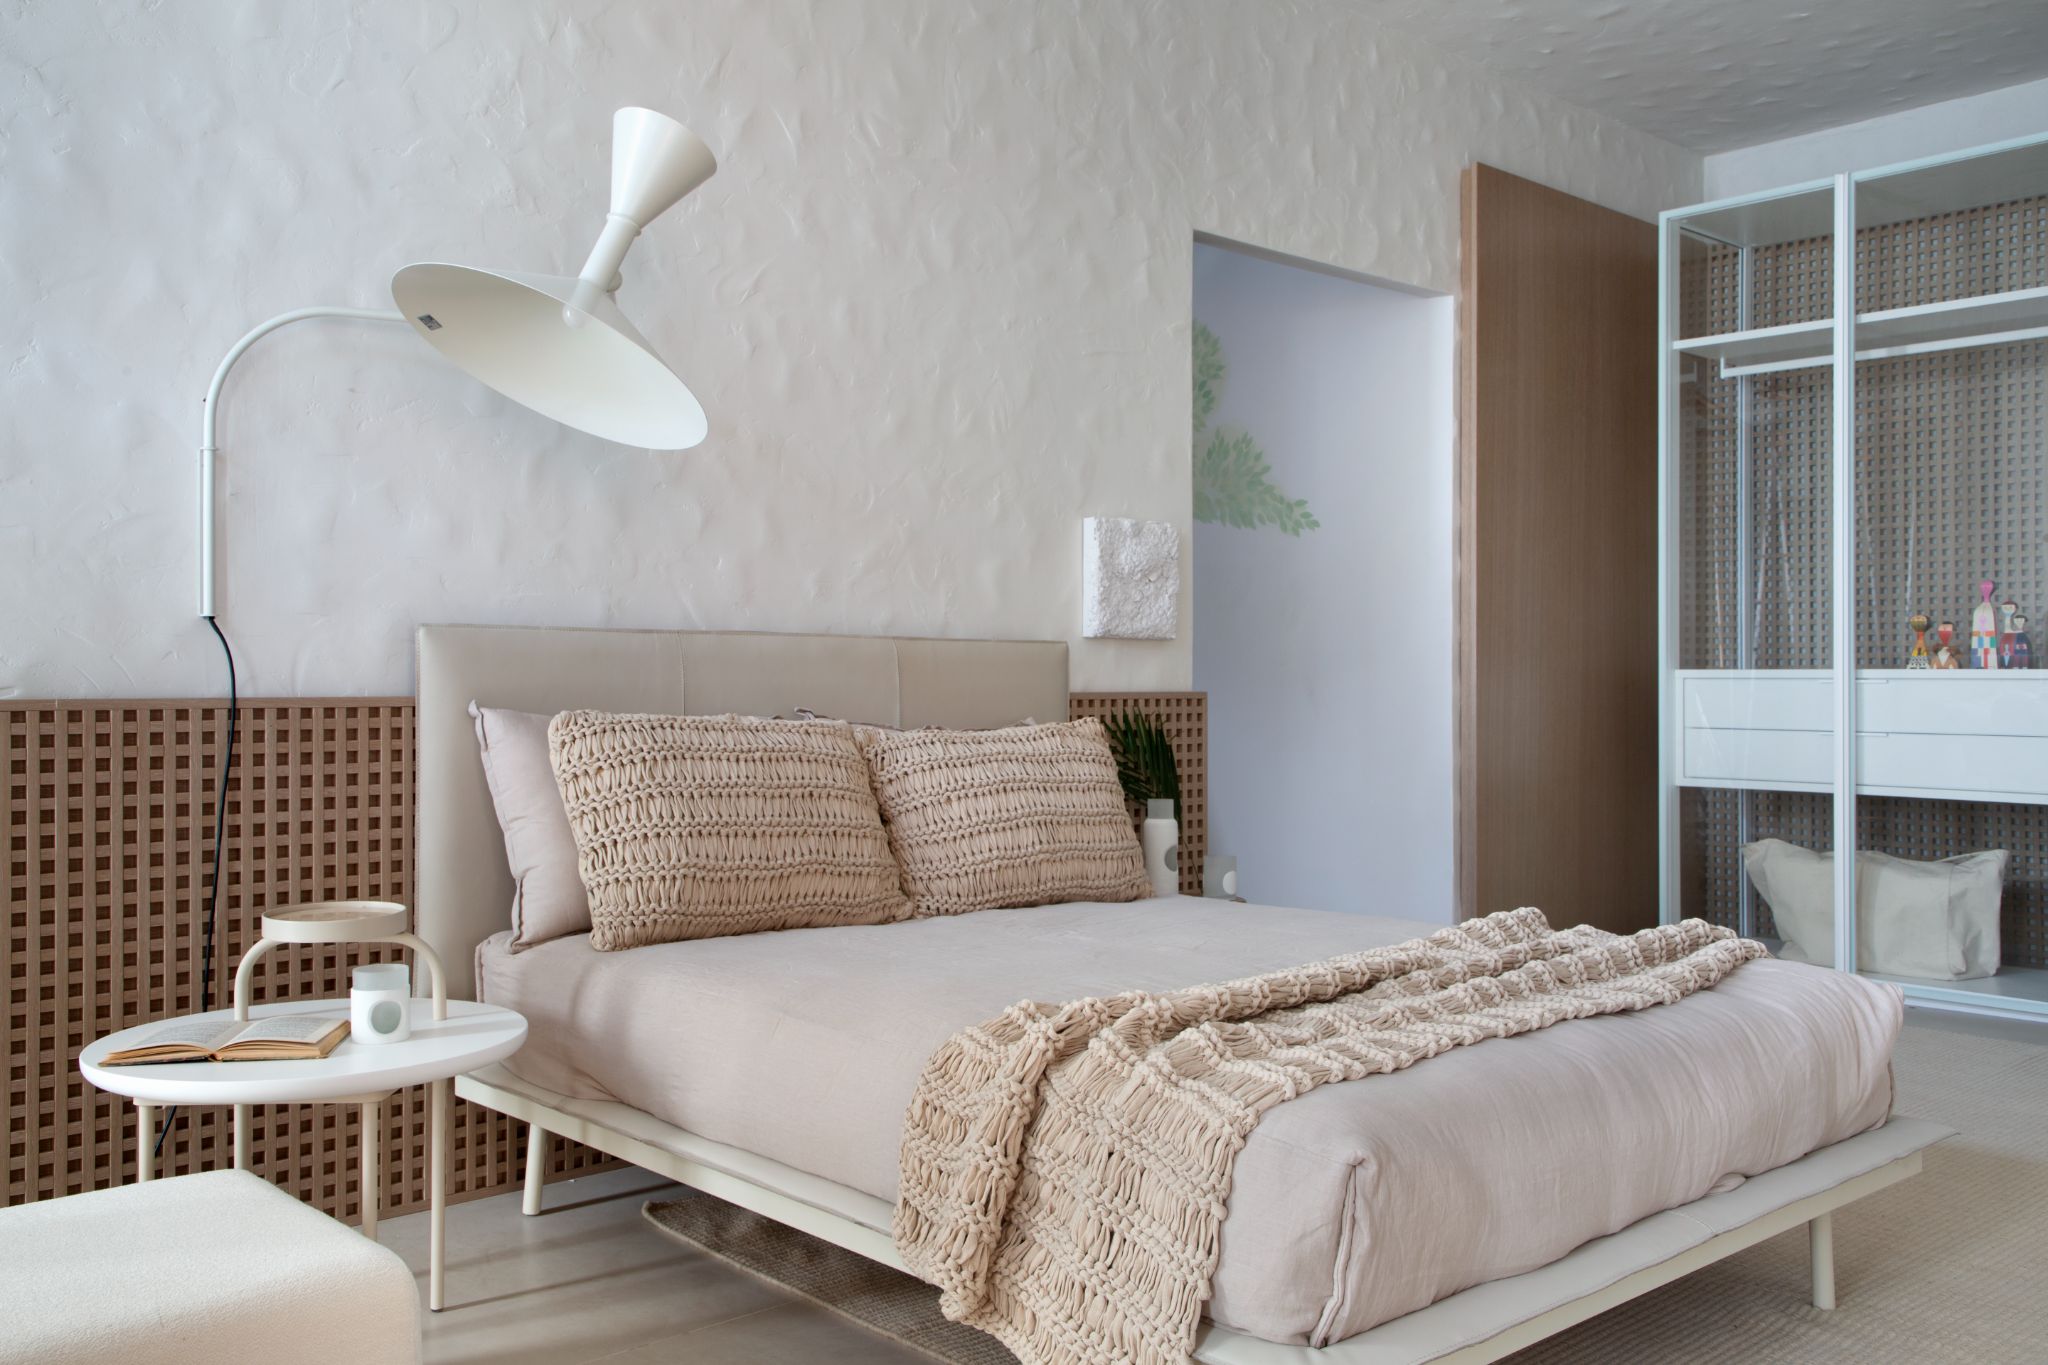 Quarto com cama de casal, elemento vazado em meia parede de fundo da cabeceira, piso branco, abajur branco e guarda roupa branco.